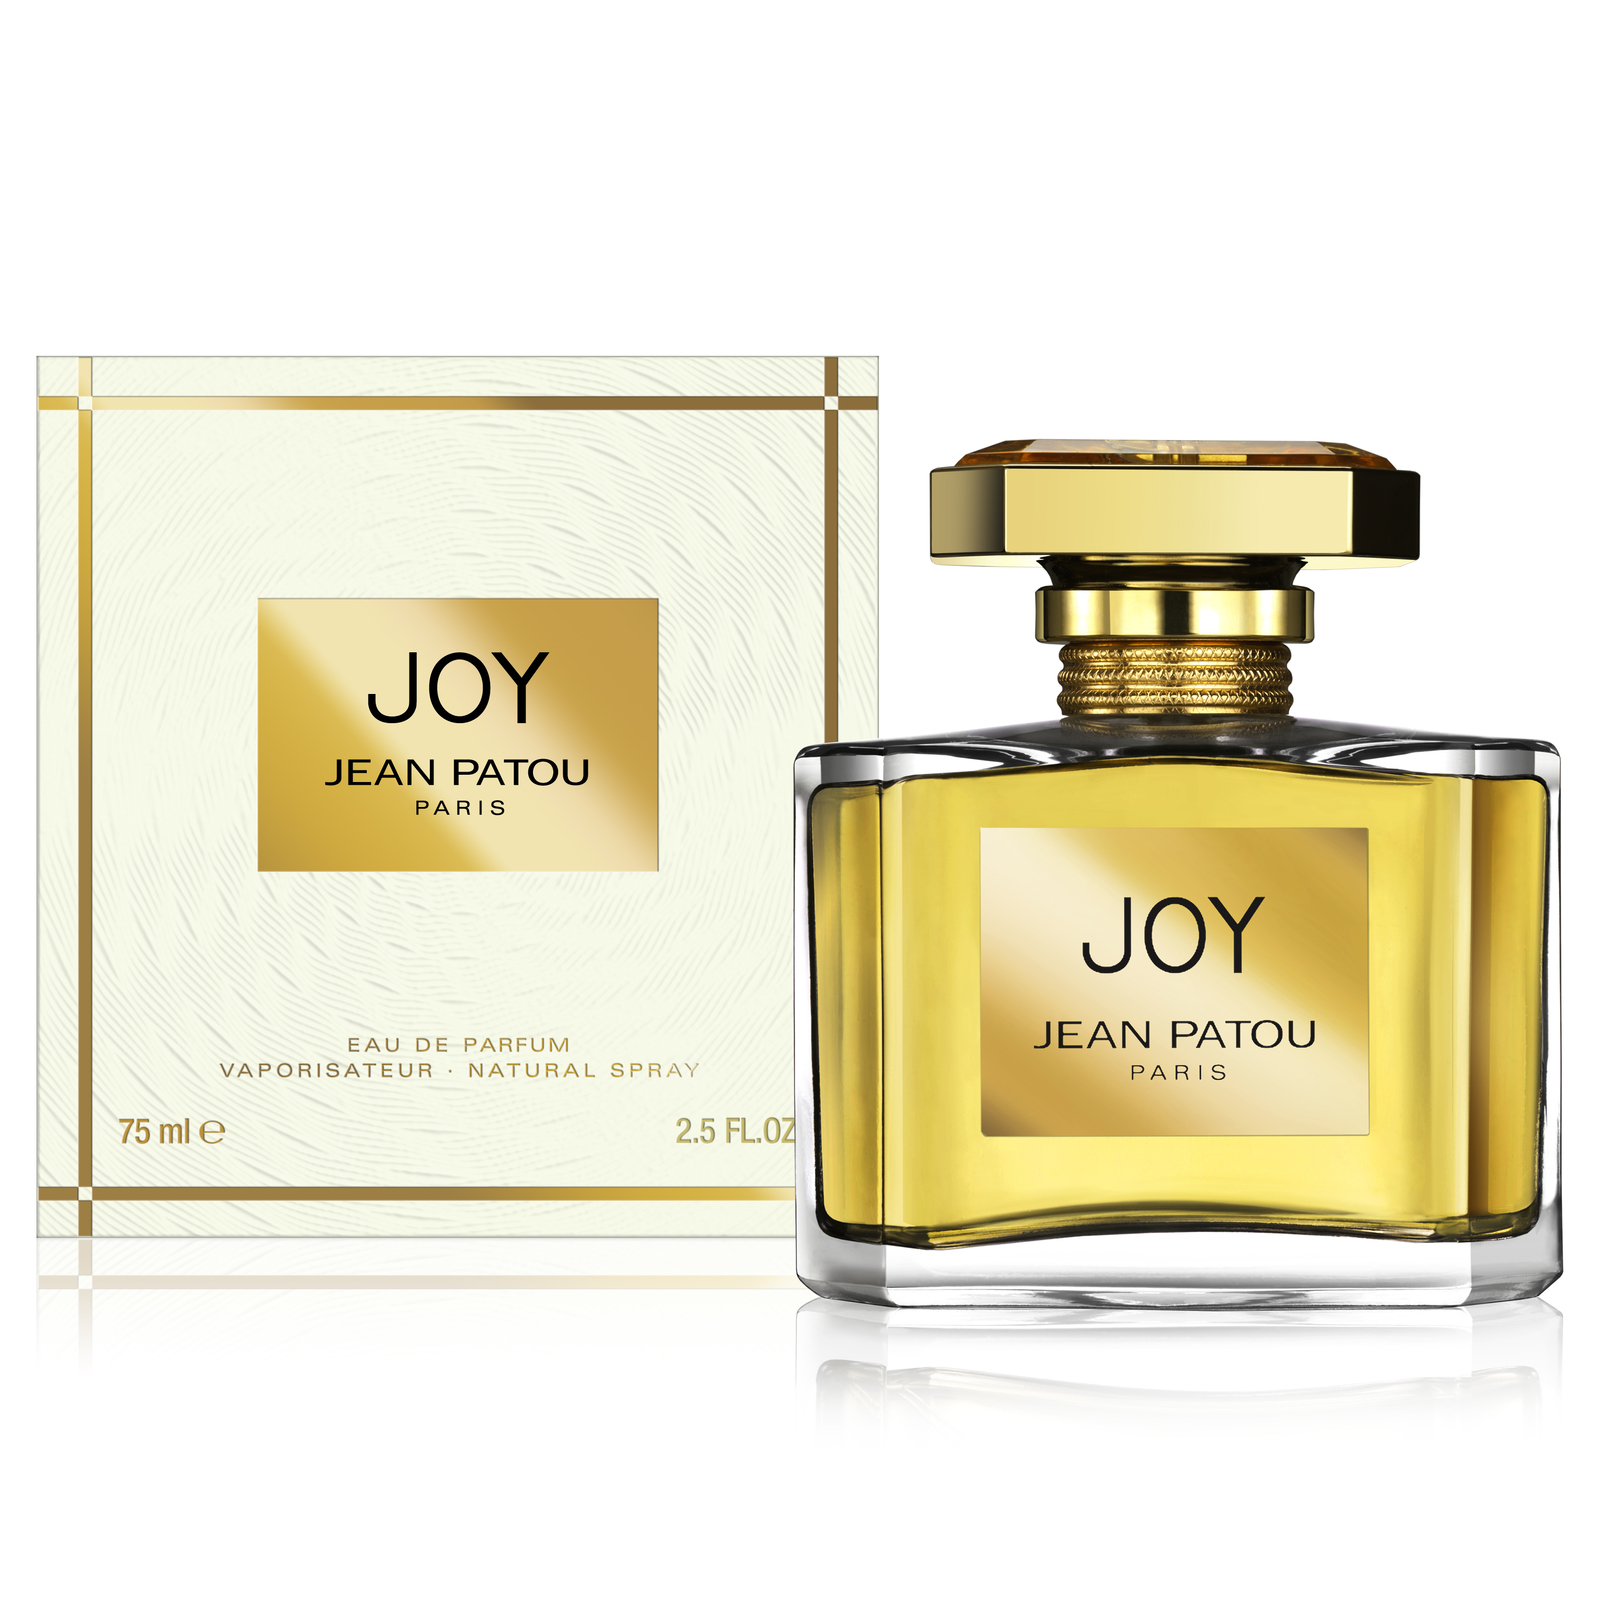 Joy by Jean Patou - Women's Perfume - Perfumery